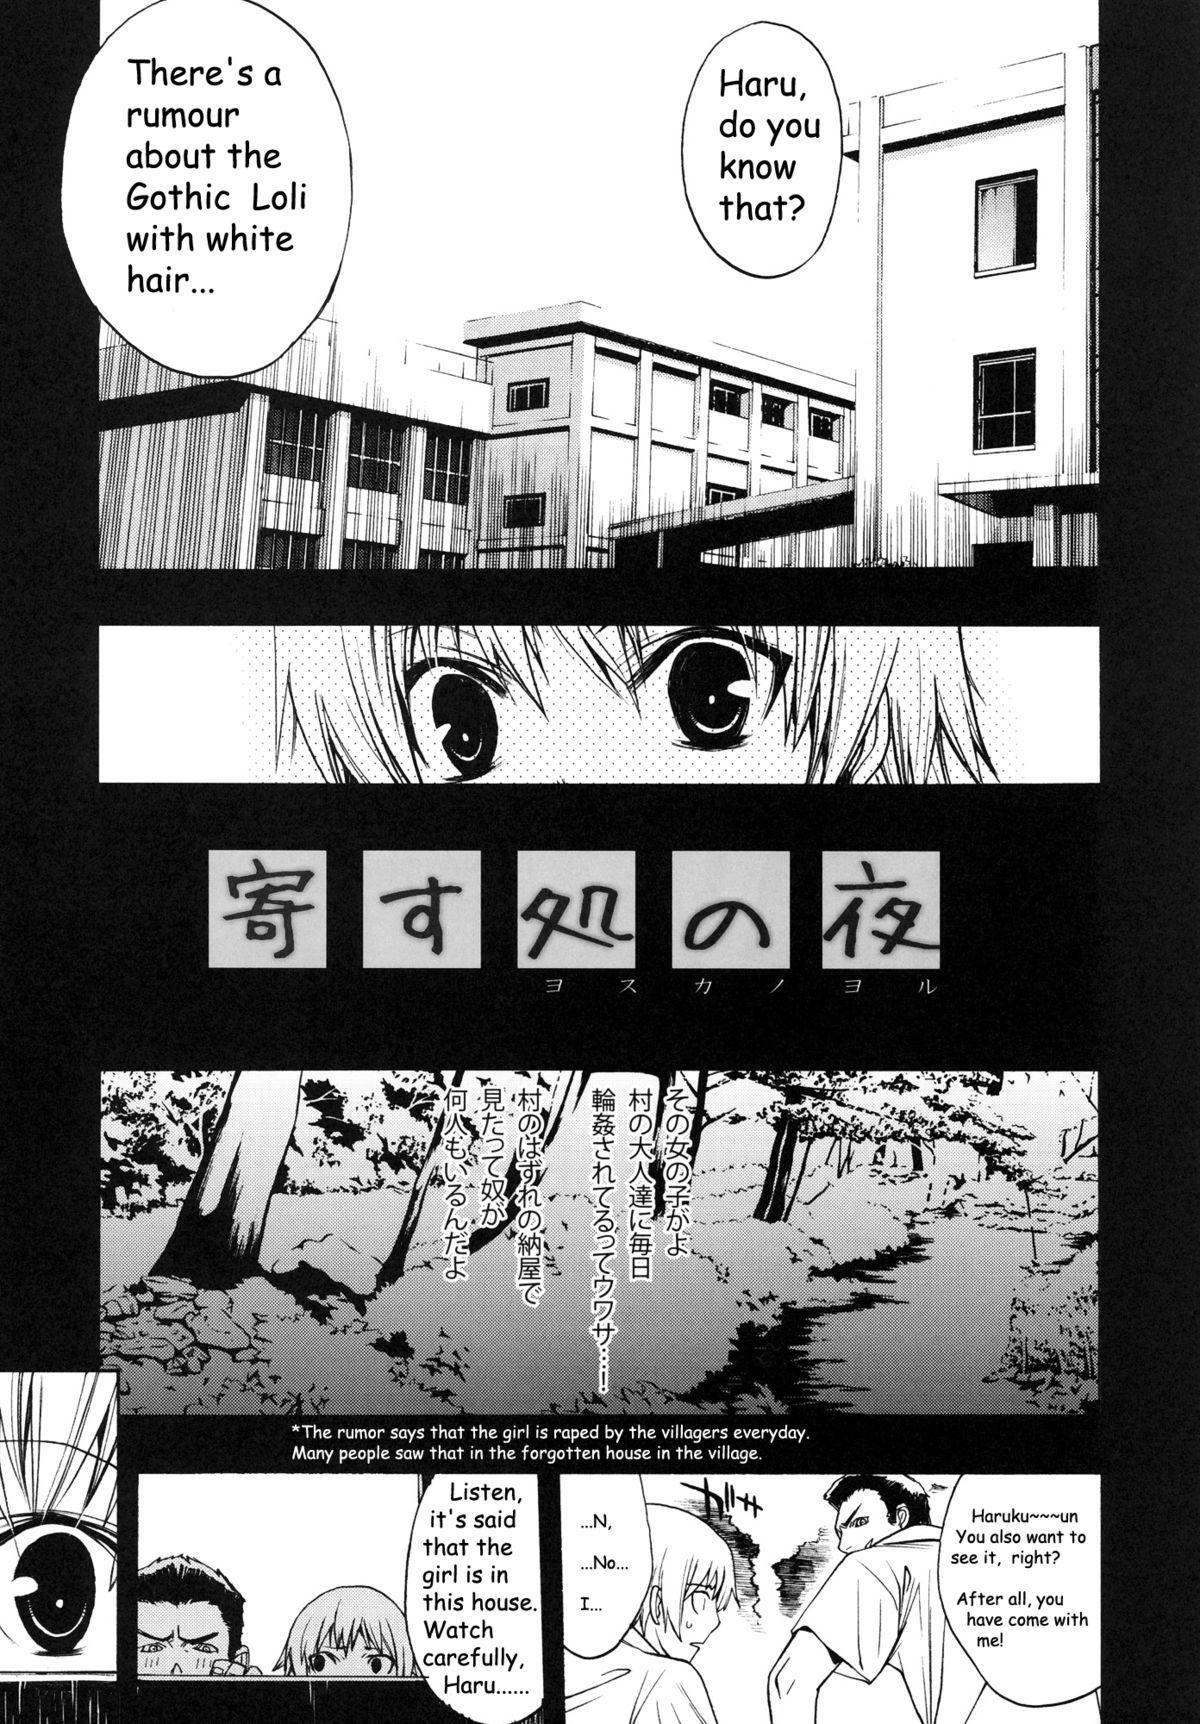 Chunky Yosuka no Yoru - Yosuga no sora Amador - Page 4